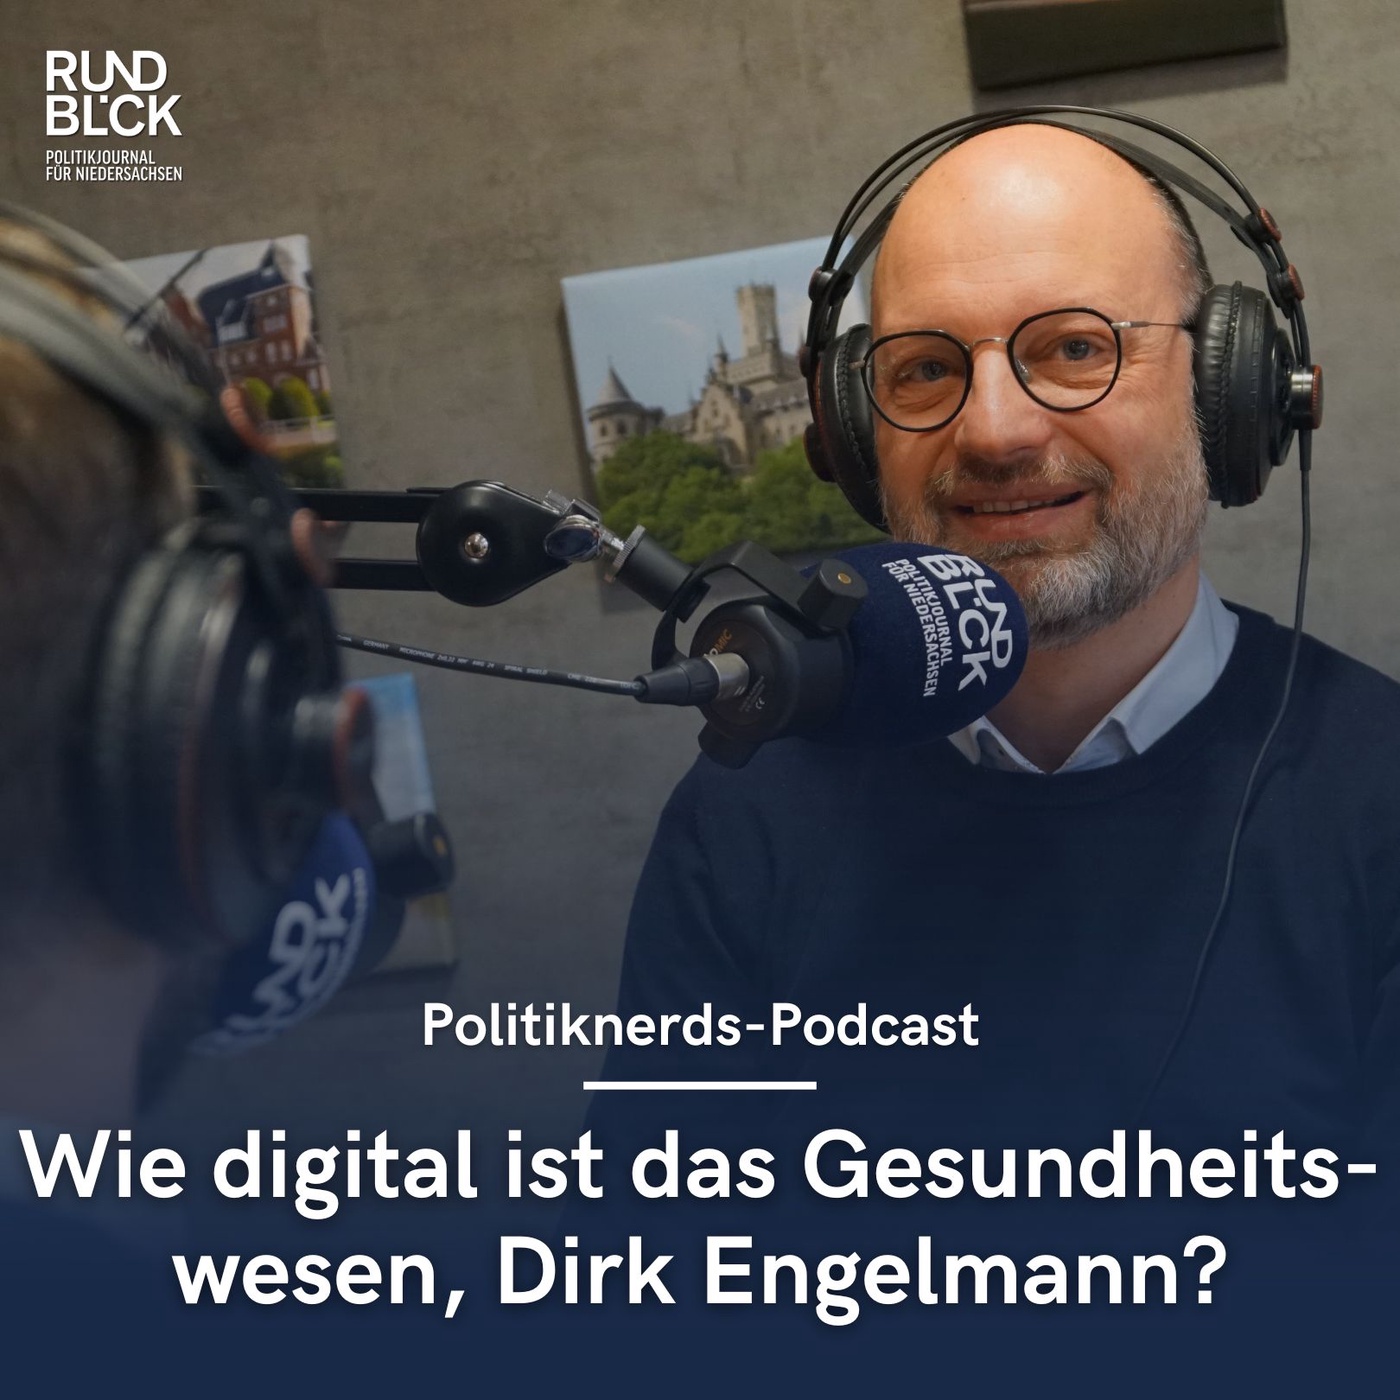 Wie digital ist das Gesundheitswesen, Dirk Engelmann?